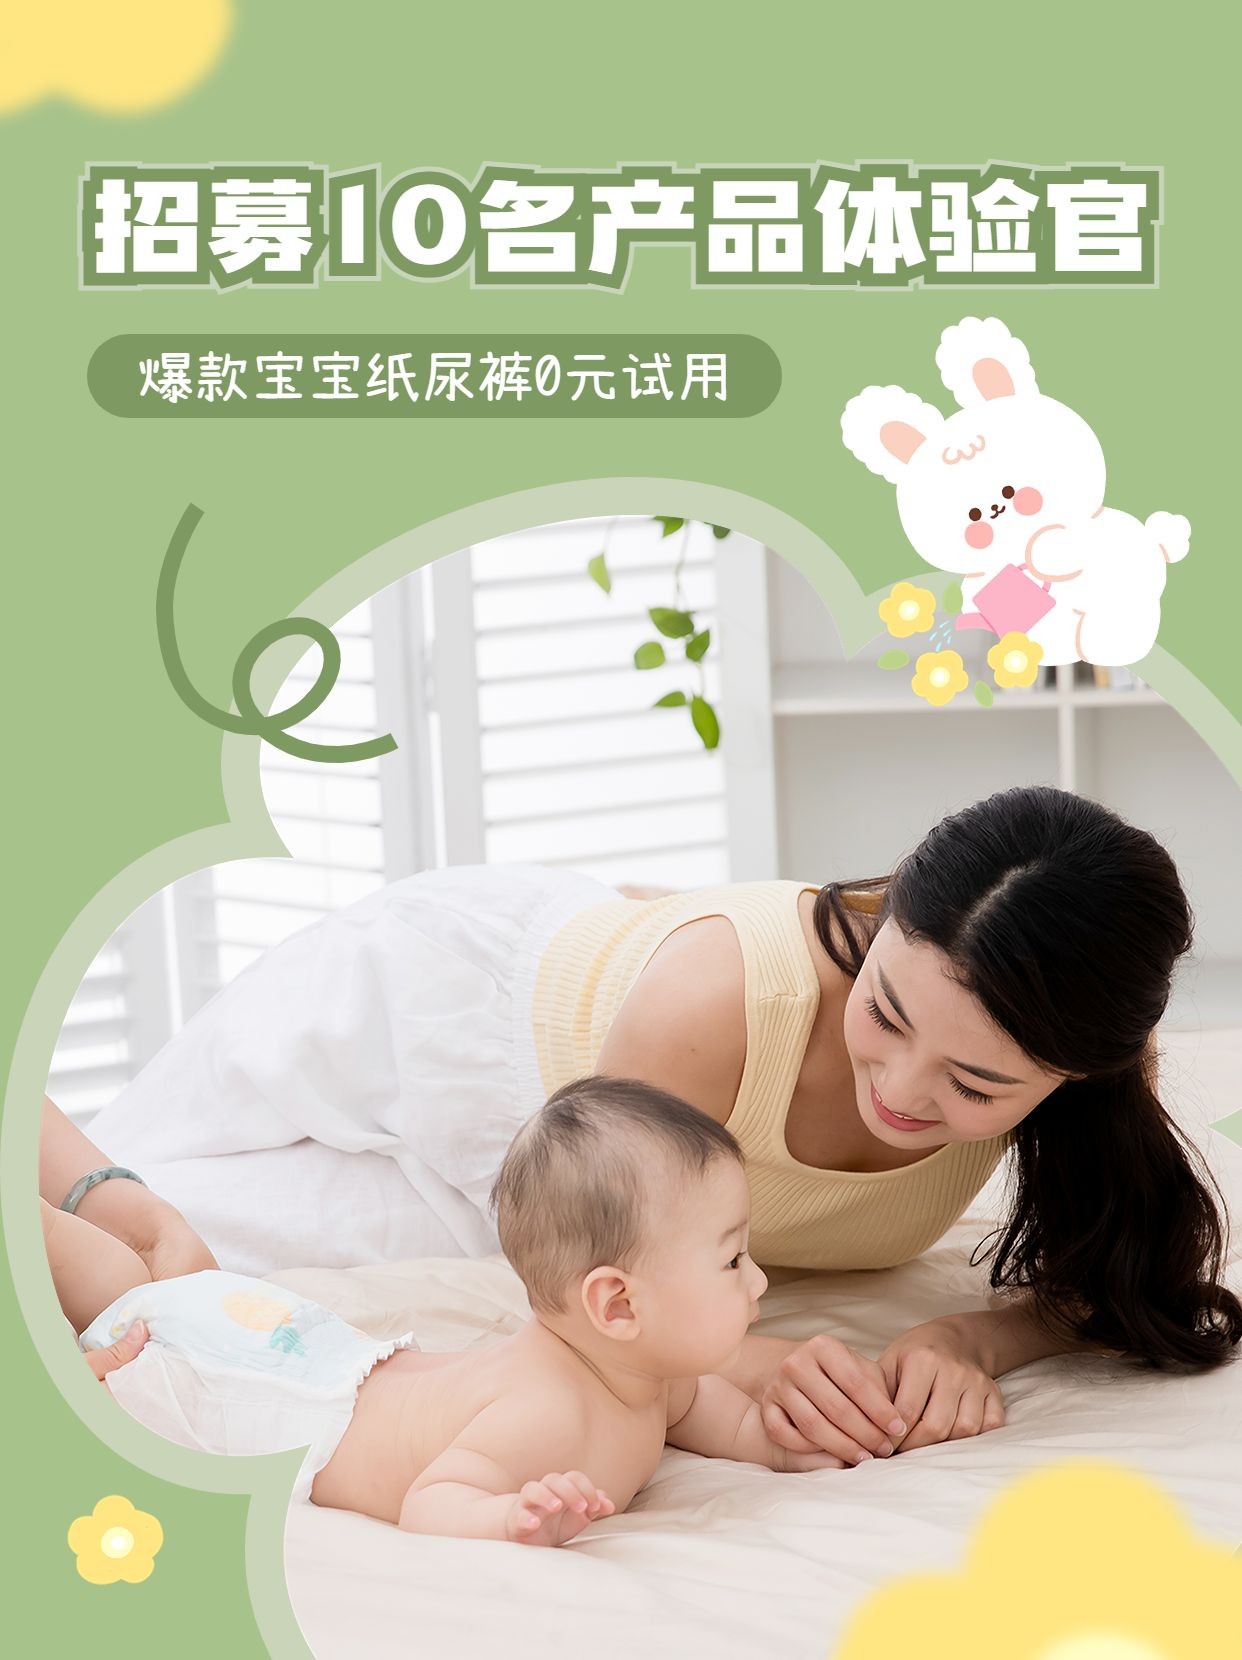 母婴粉丝互动福利0元试用活动宣传小红书封面套装